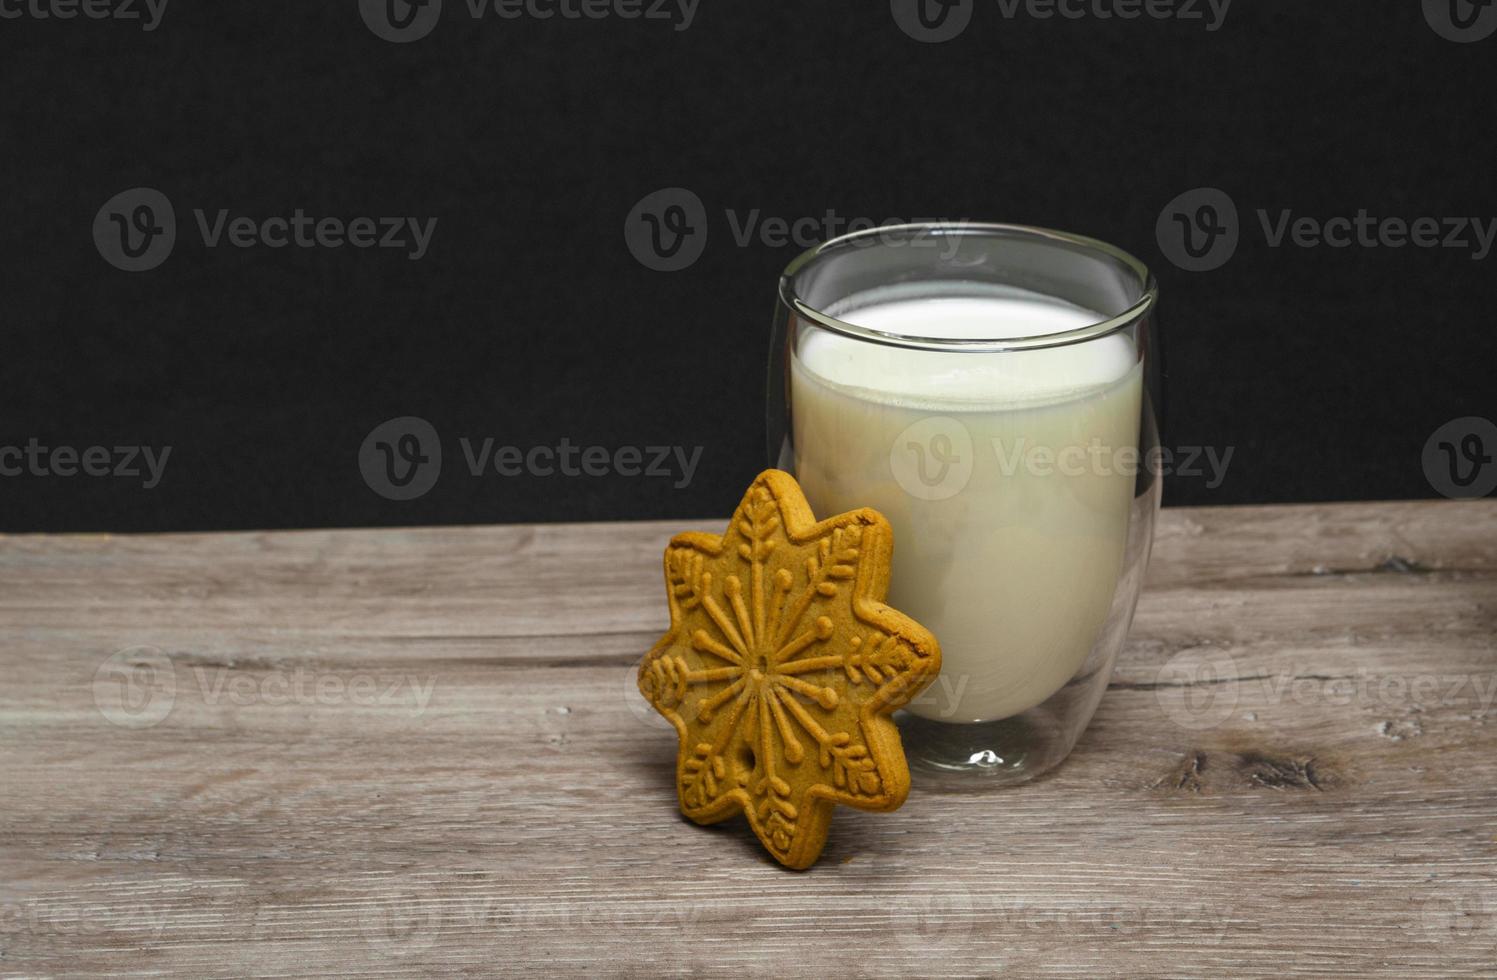 kerstmelk en peperkoek voor de kerstman. een groot glas melk. foto van kerstdrankje op houten background.close-up